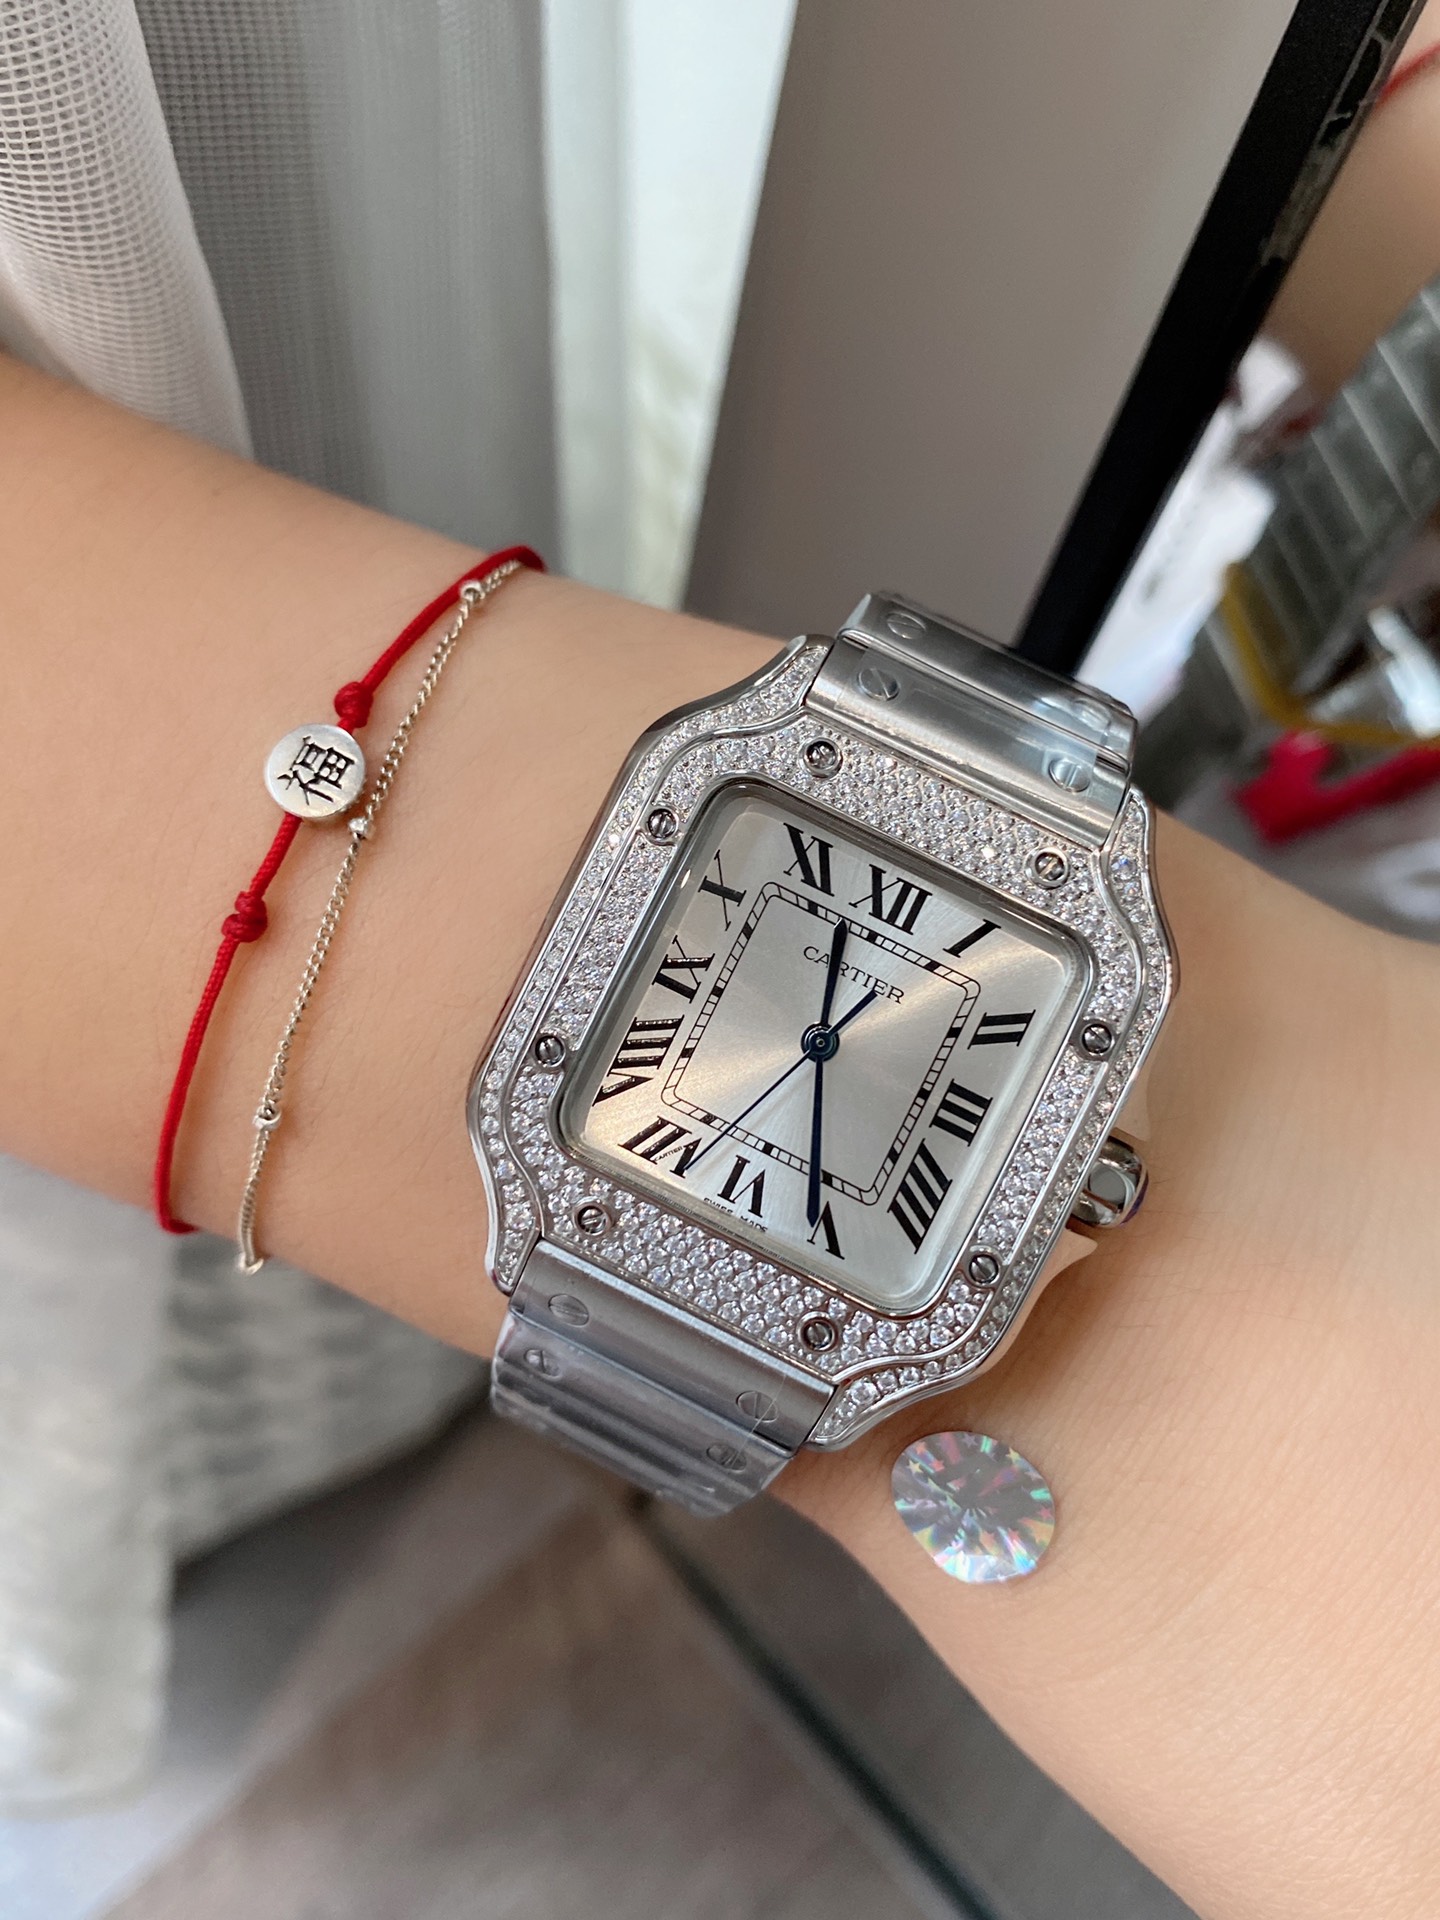 お勧め品‼腕時計カルティエ激安通販 キラキラ ダイヤモンド飾り ステンレス鋼 大人気ワッチ ホワイト_4